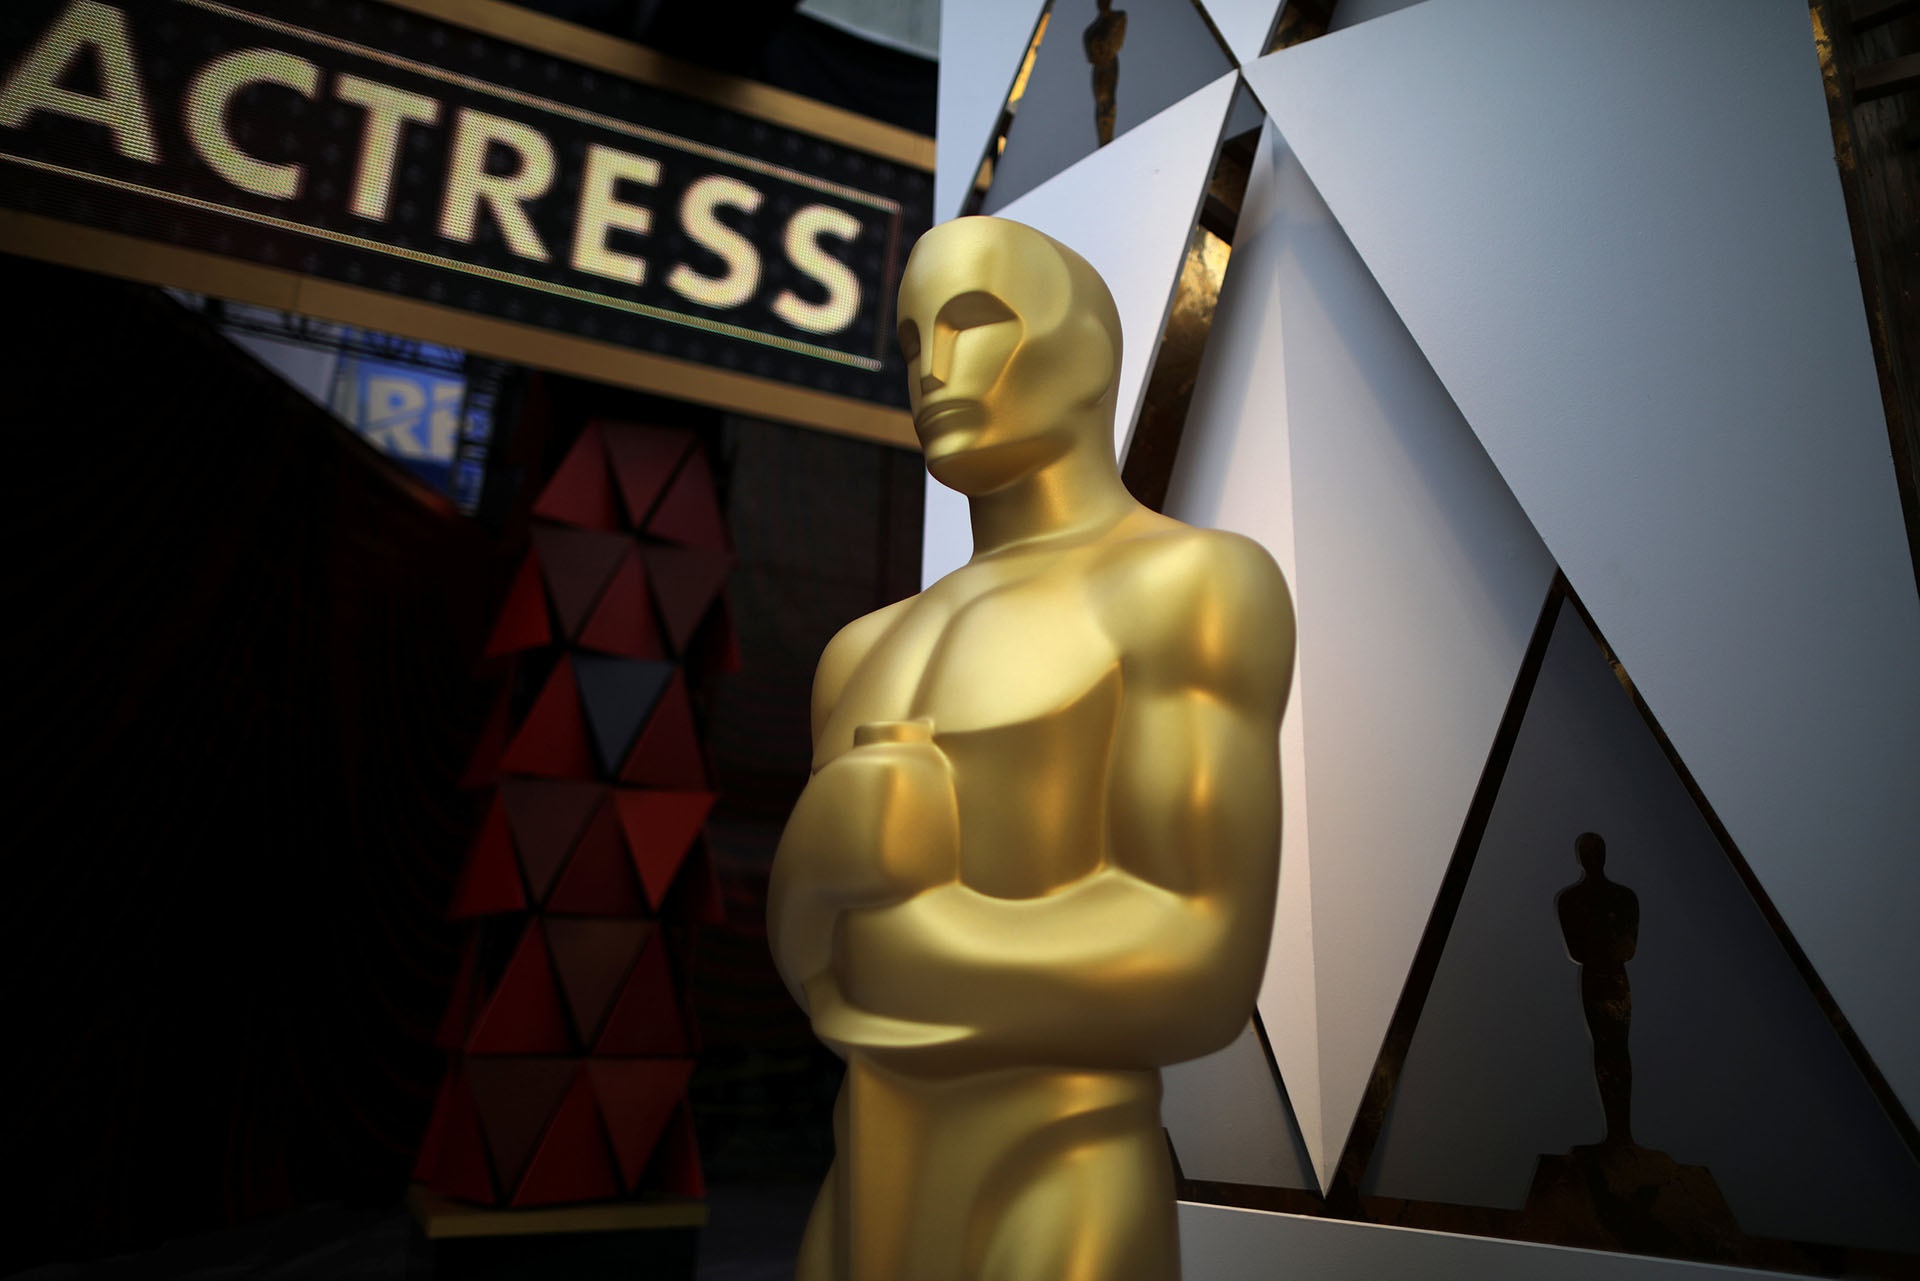 Premios Oscar 2022: fecha, horarios, ganadores y cómo ver la gala en vivo